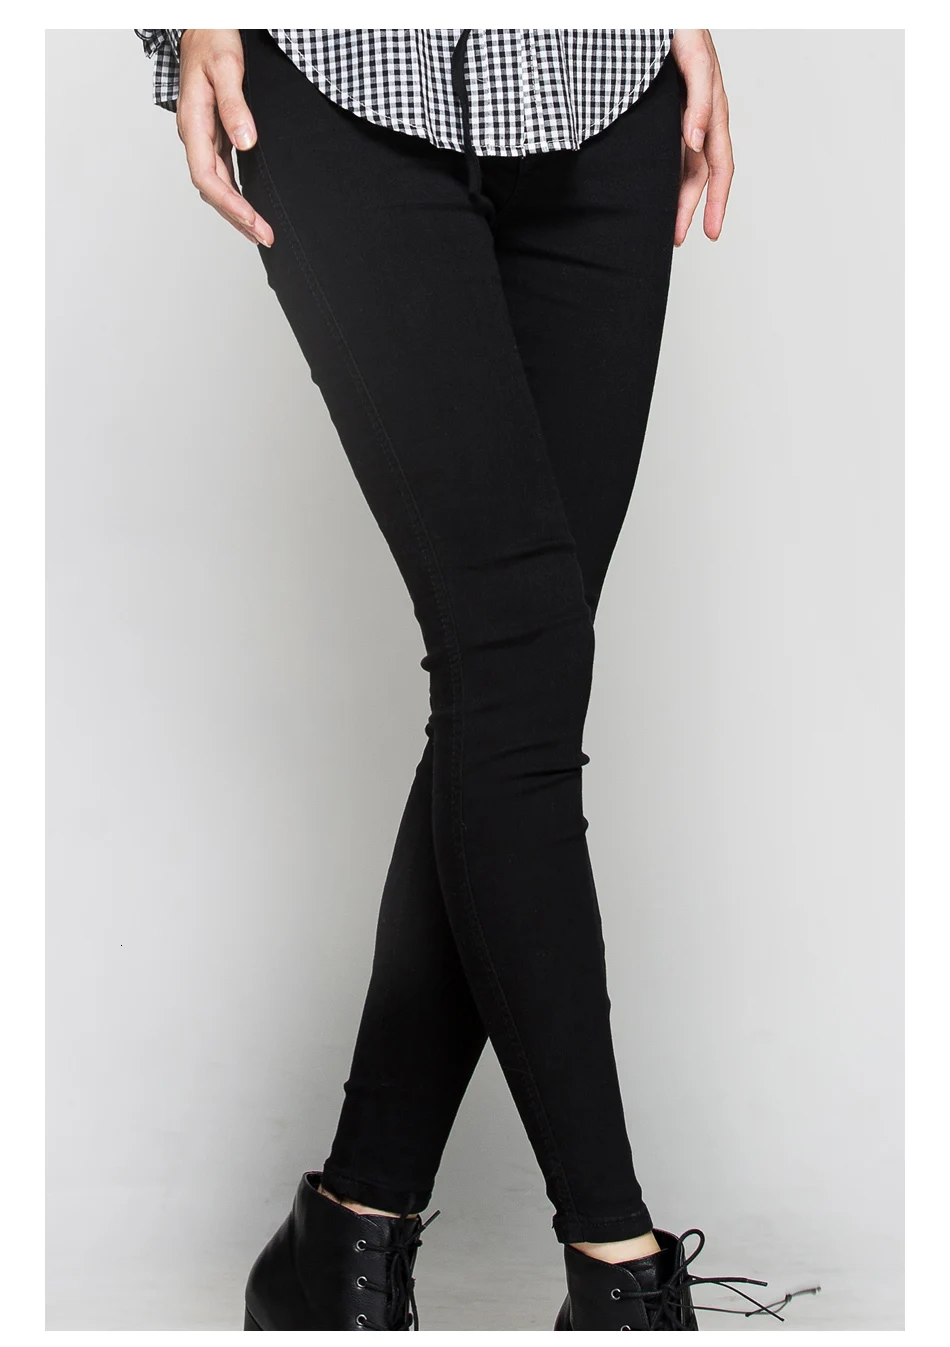 Jocoo Jolee брюки-карандаш с высокой талией, джинсы, Сексуальные облегающие джинсы для женщин, уличный стиль, Эластичные Обтягивающие Брюки, брюки, новинка